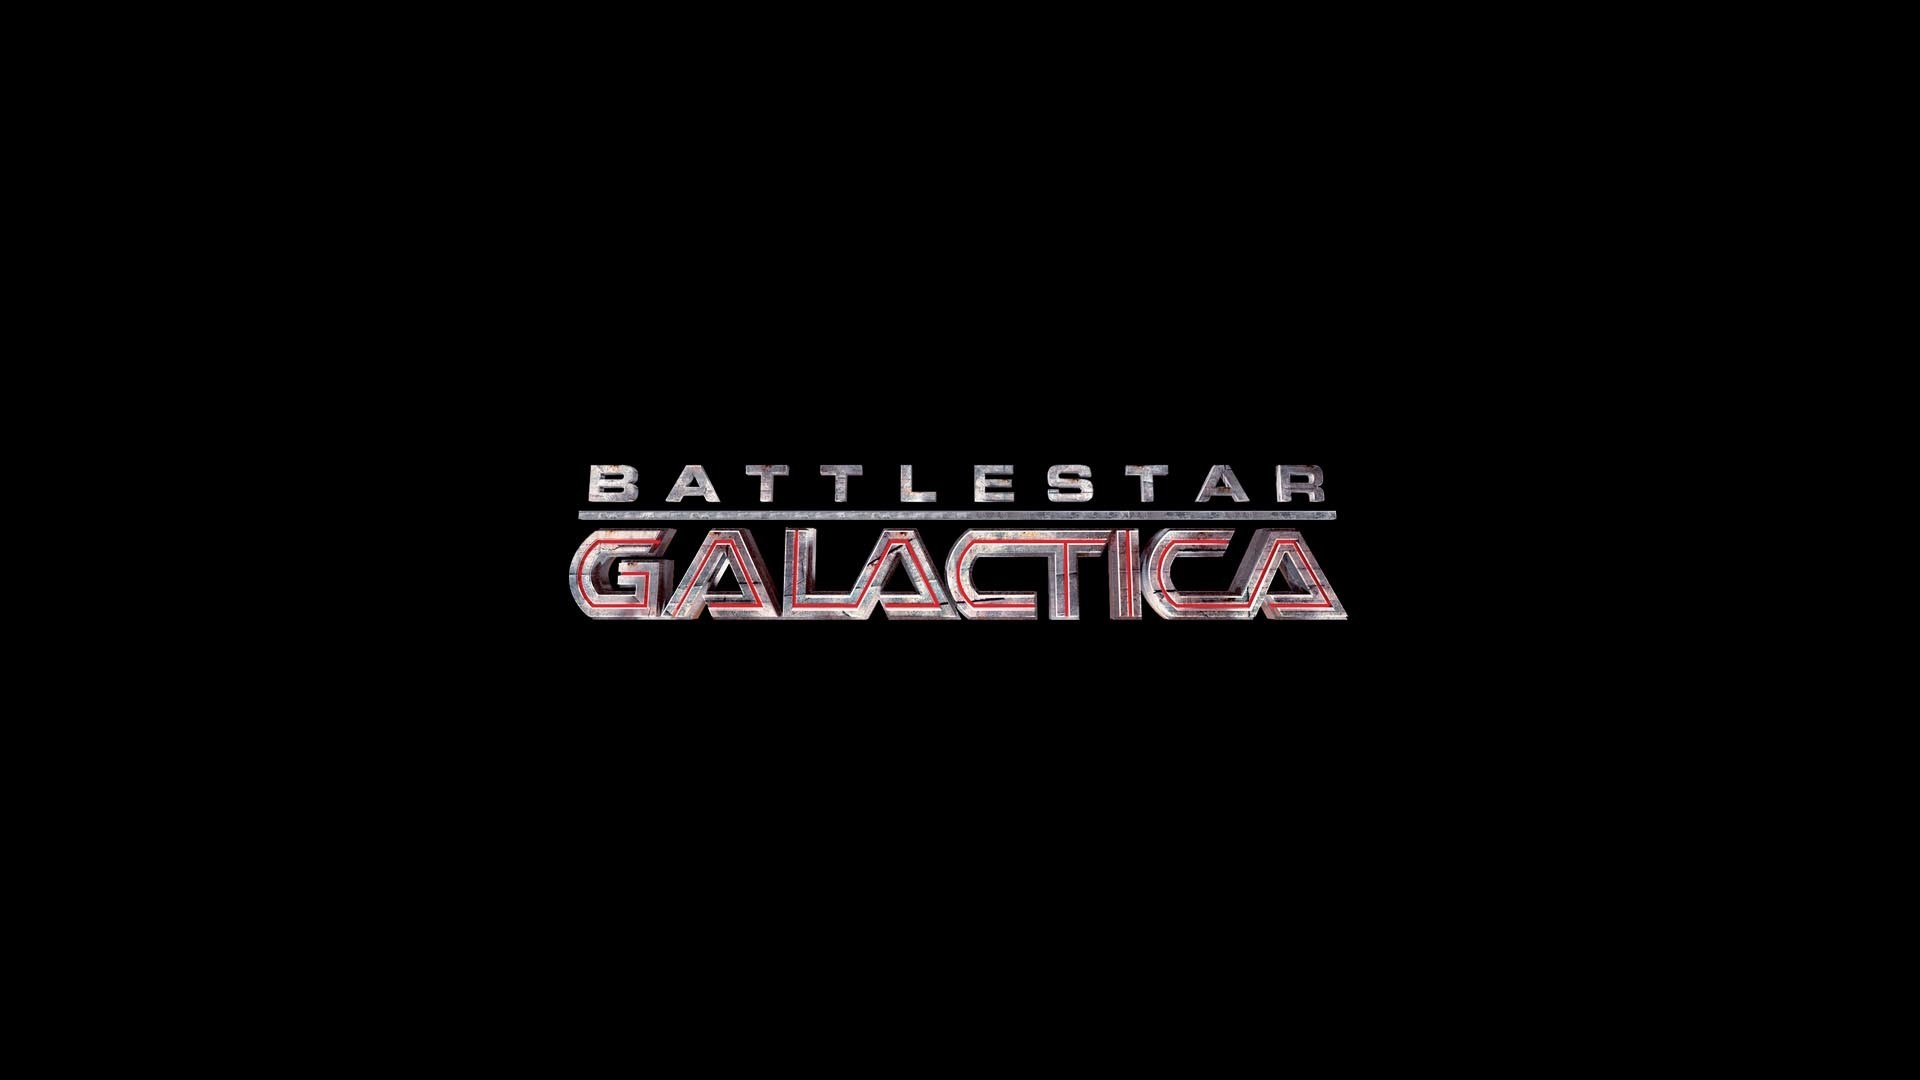 1920x1080 Renton Bishop - Widescreen Wallpapers: battlestar galactica 2003 image -   px